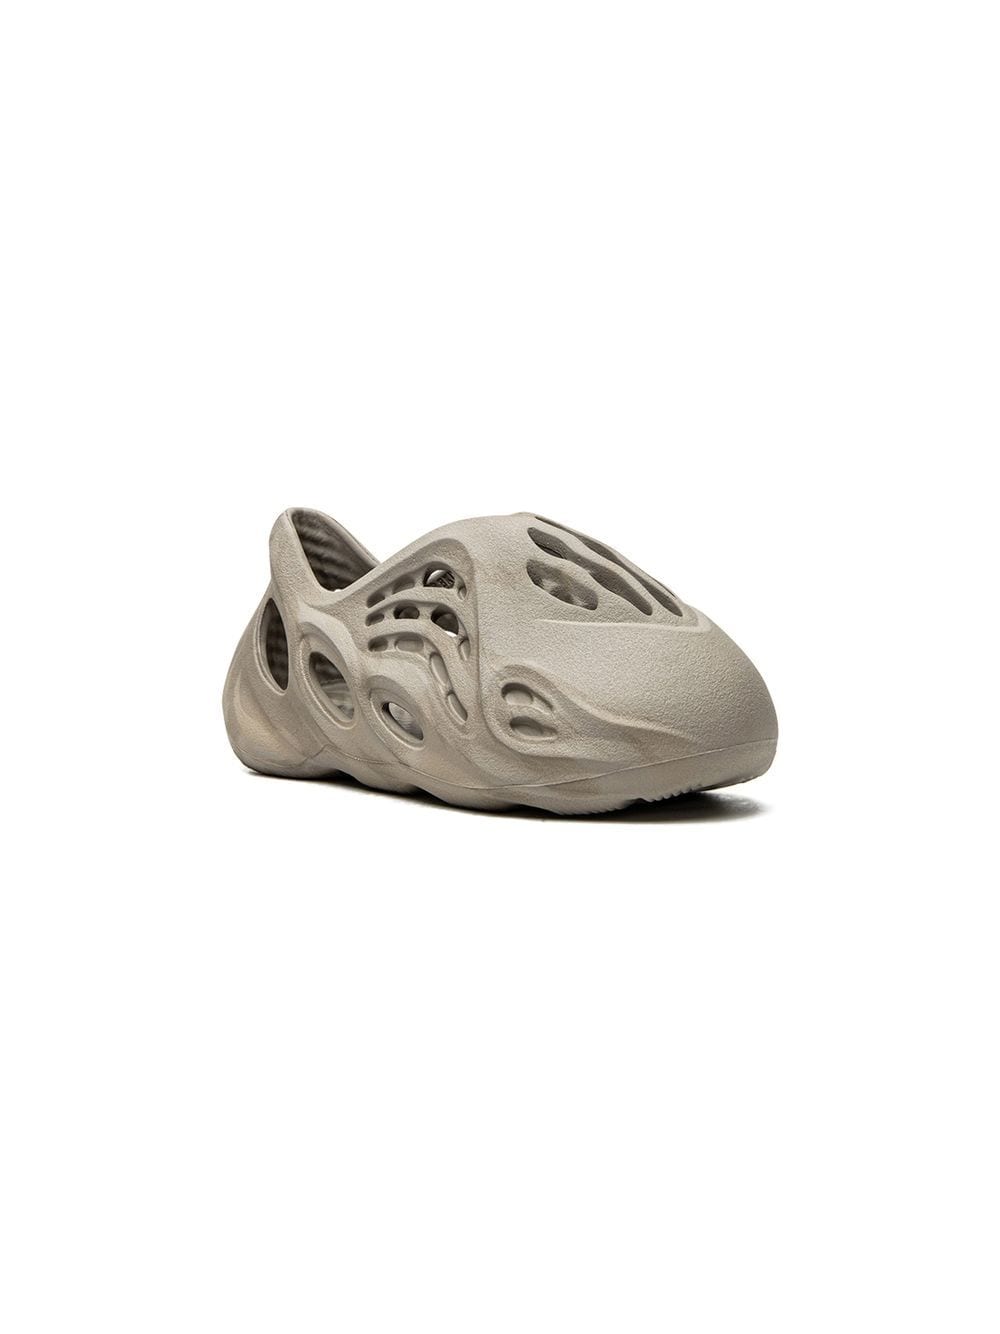 Adidas Yeezy Kids Yeezy Foam Runner "Stone Sage" sneakers - Neutrals von Adidas Yeezy Kids